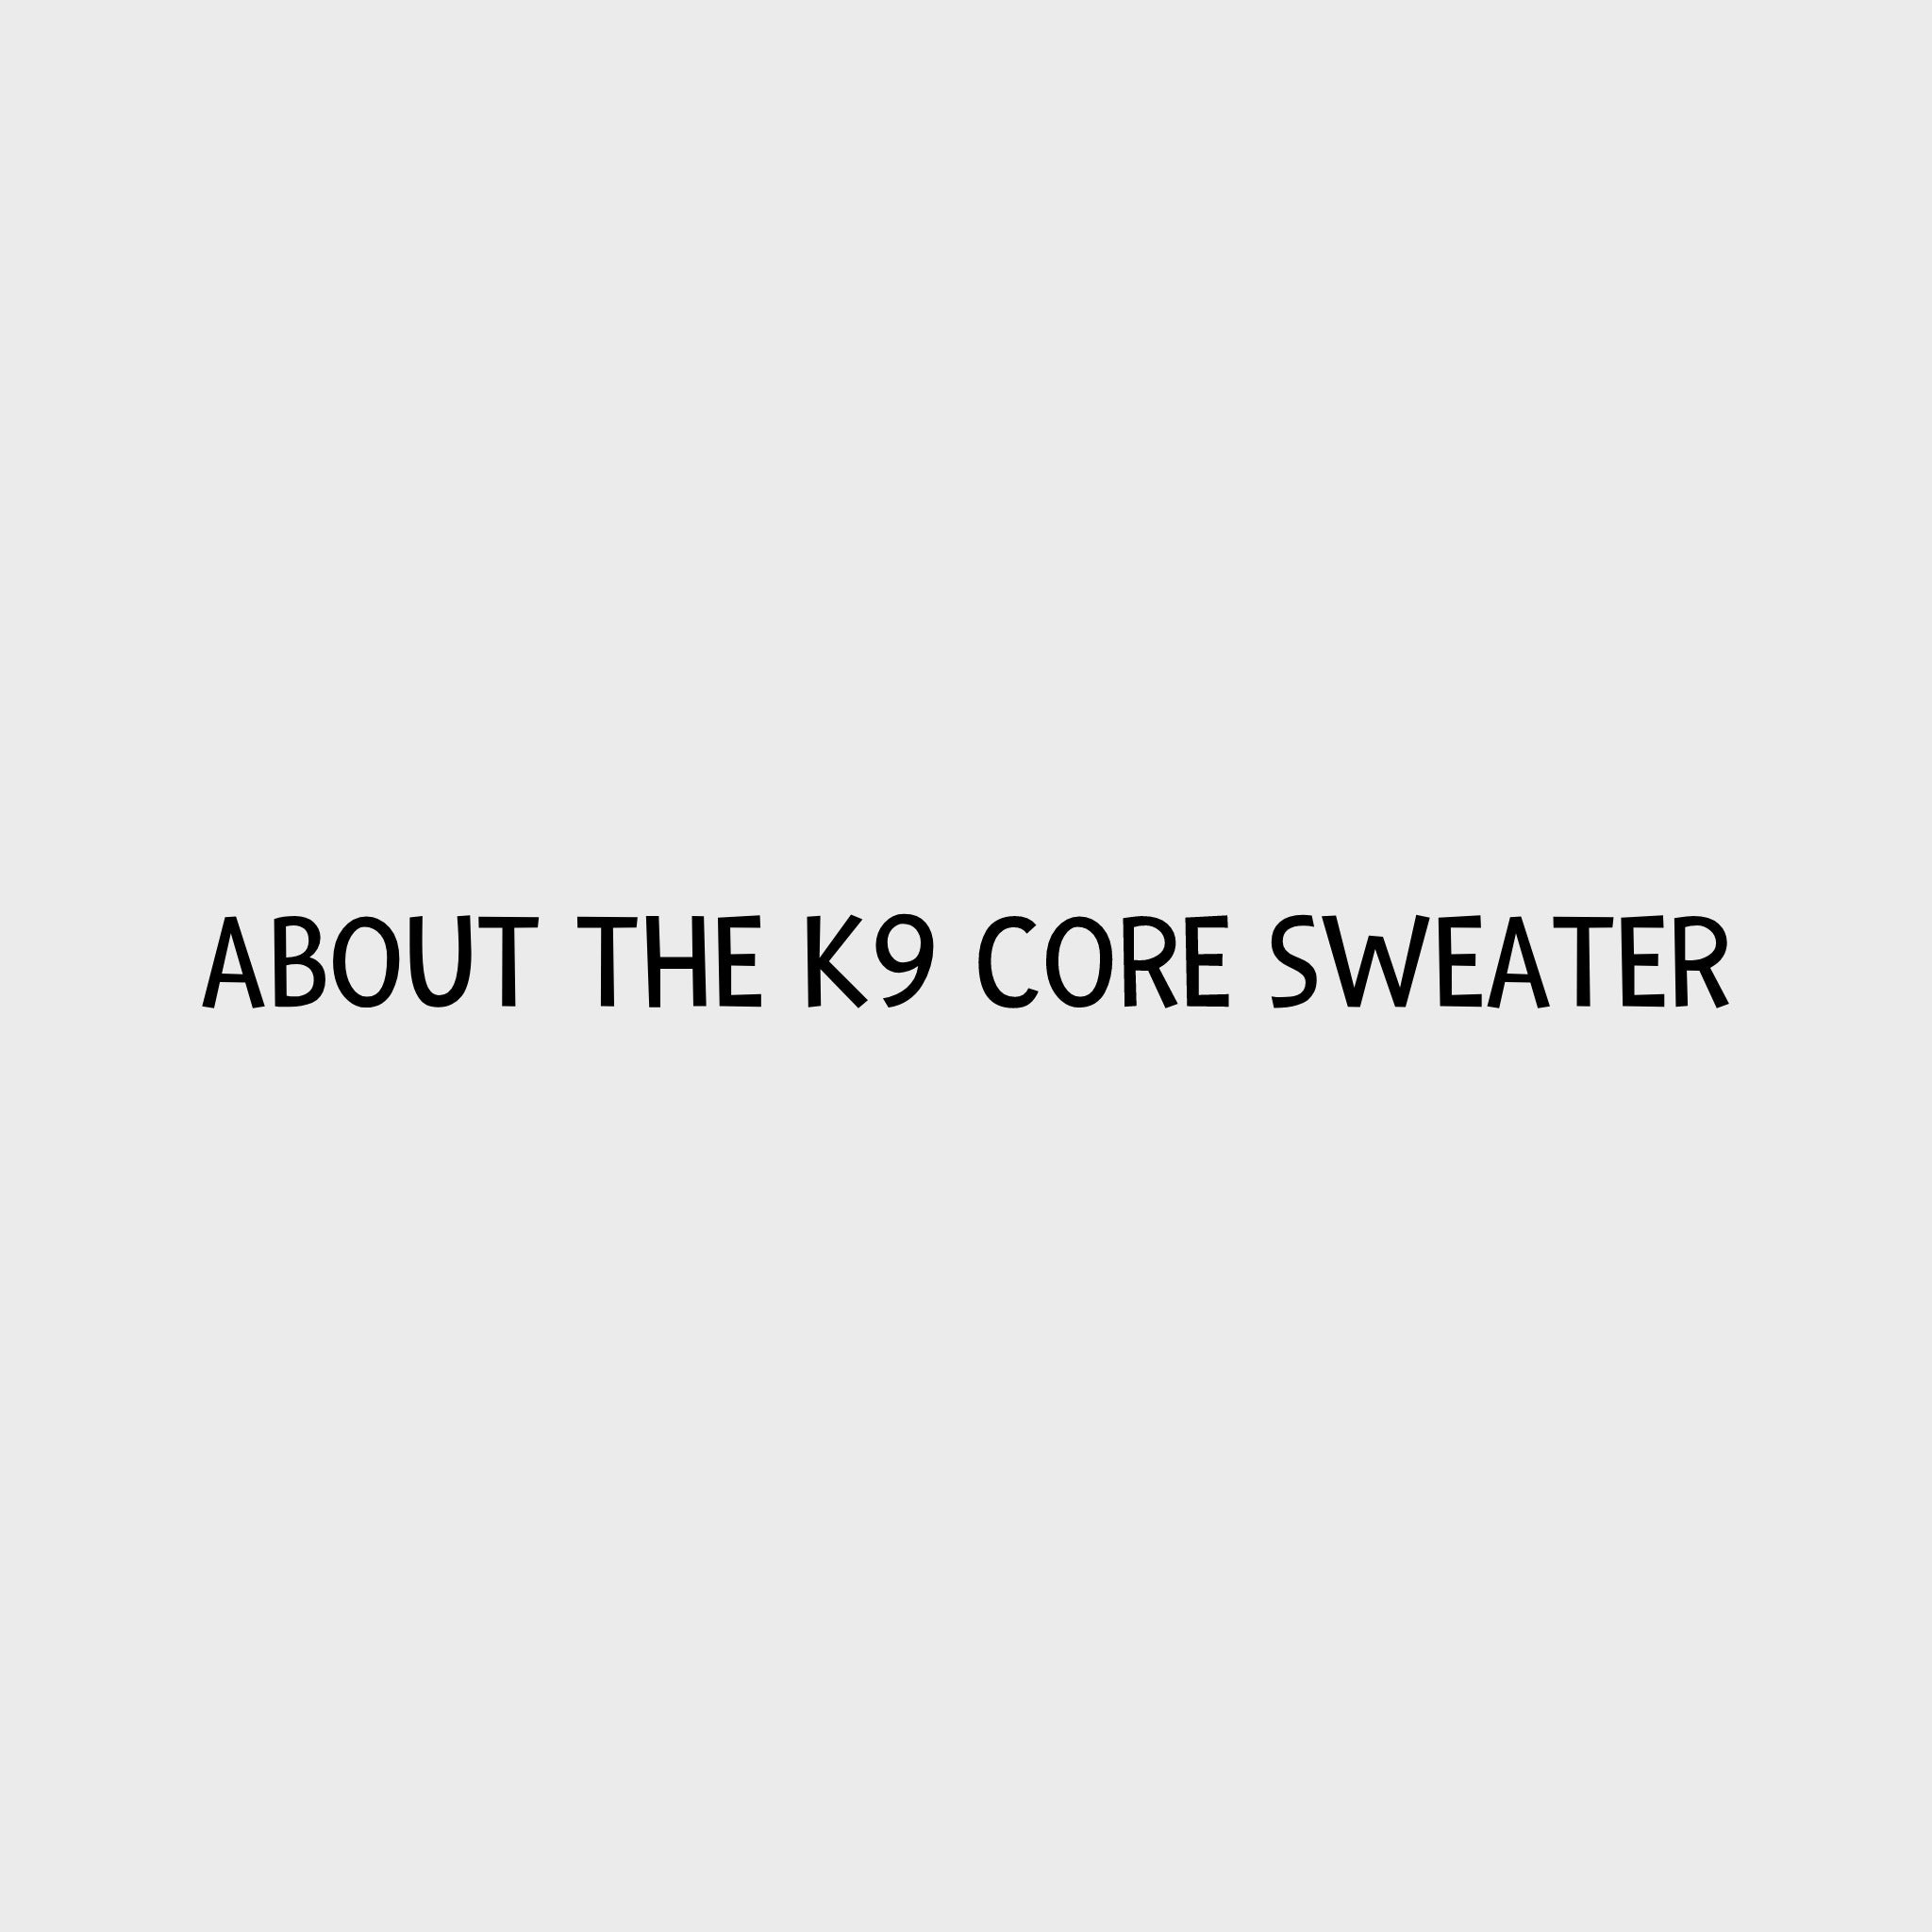 Video - Kurgo K9 Core Sweater